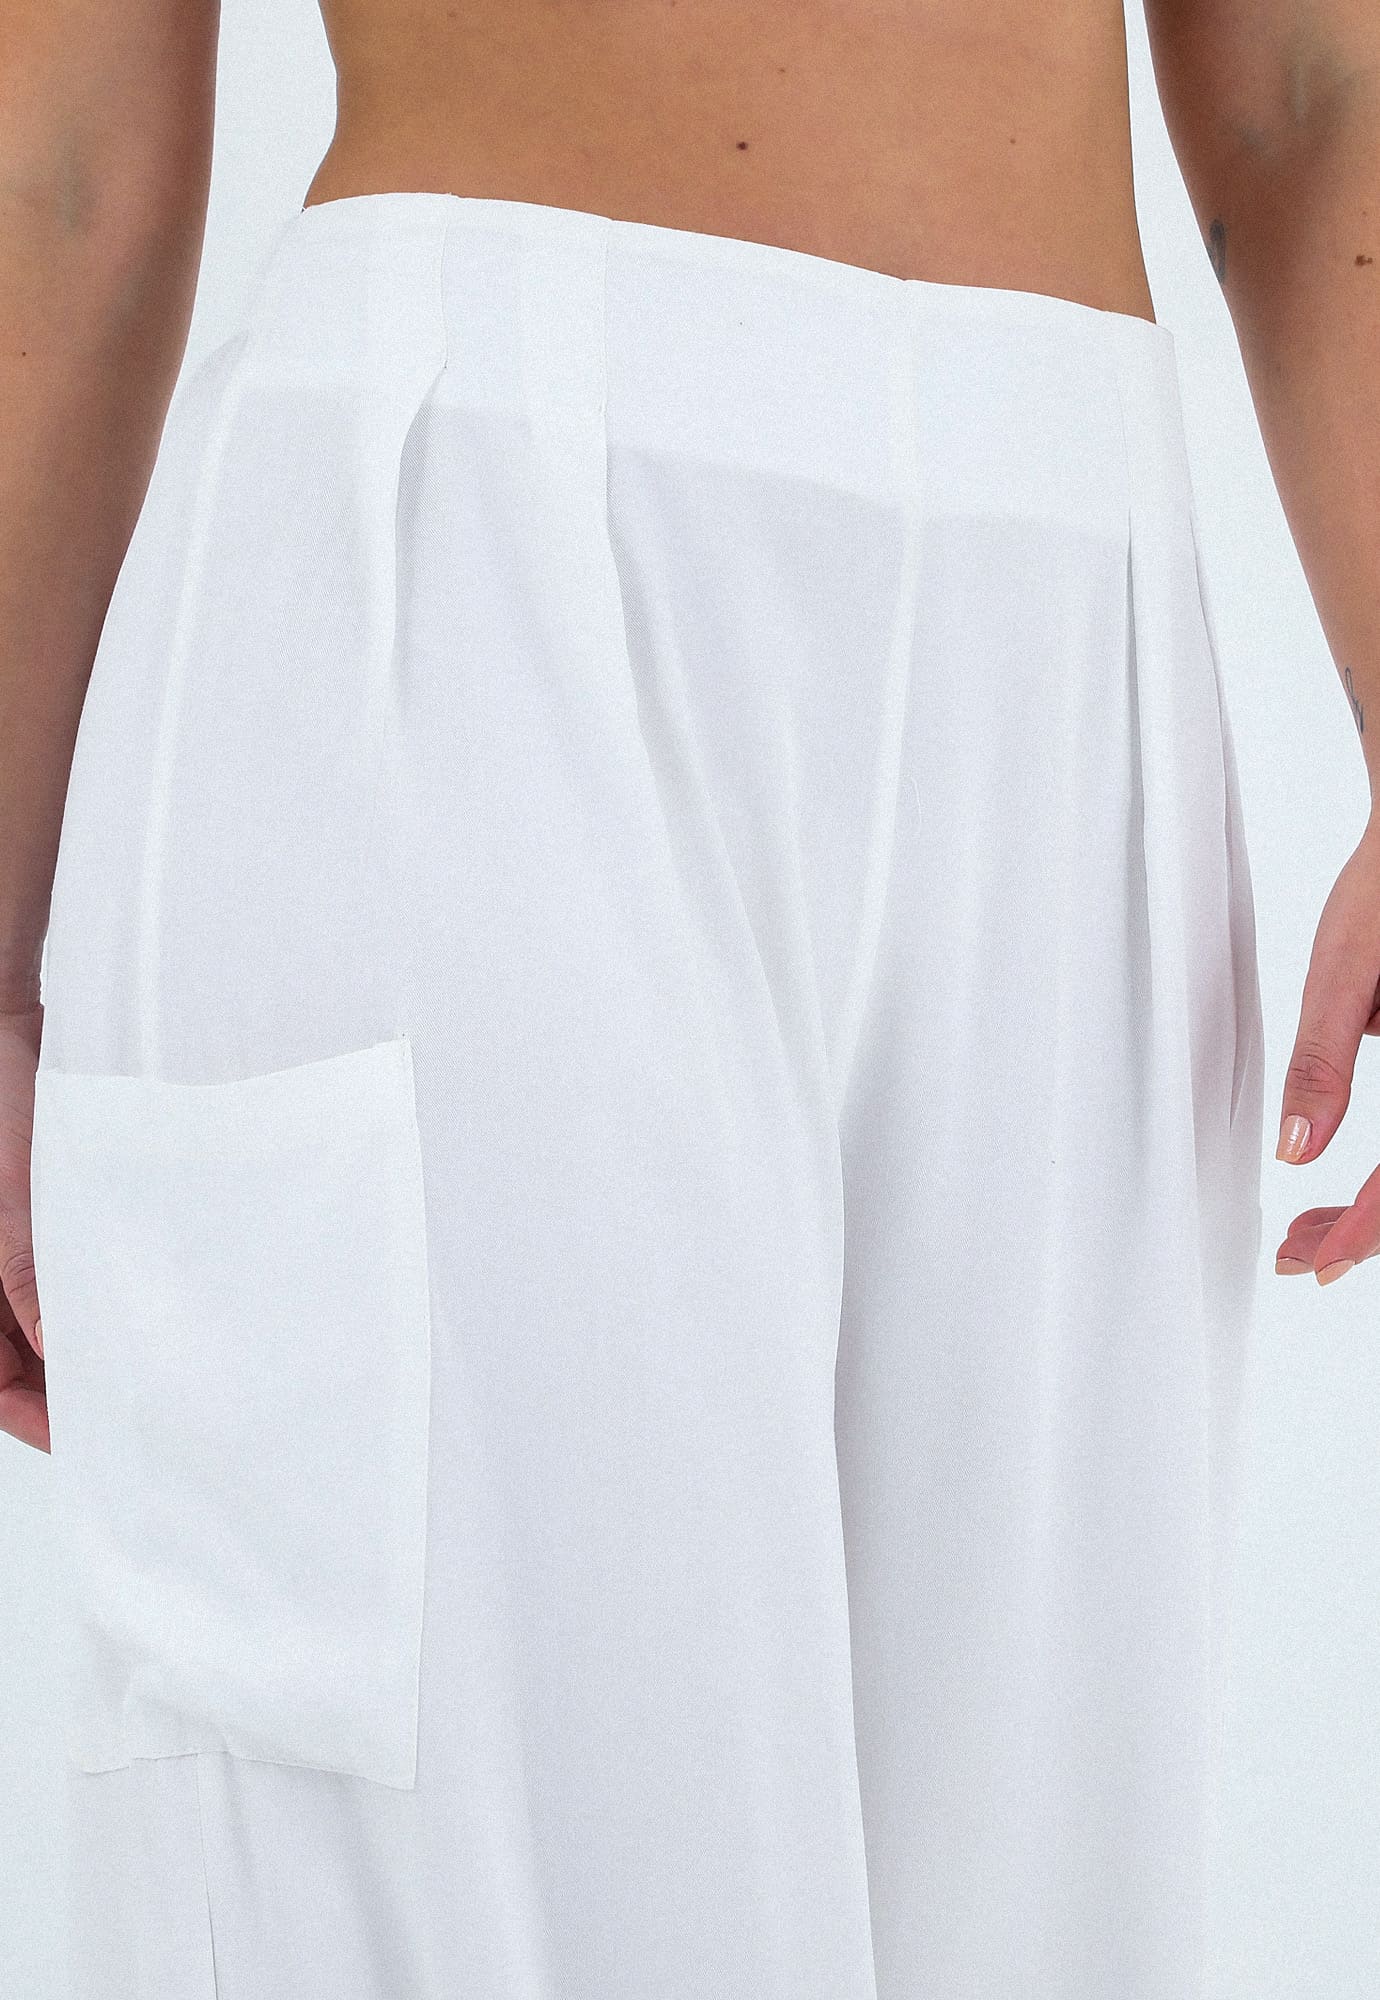 Pantalon lino crudo, con bolsillos frontales funcionales, con costura central y pretina resortada para mujer